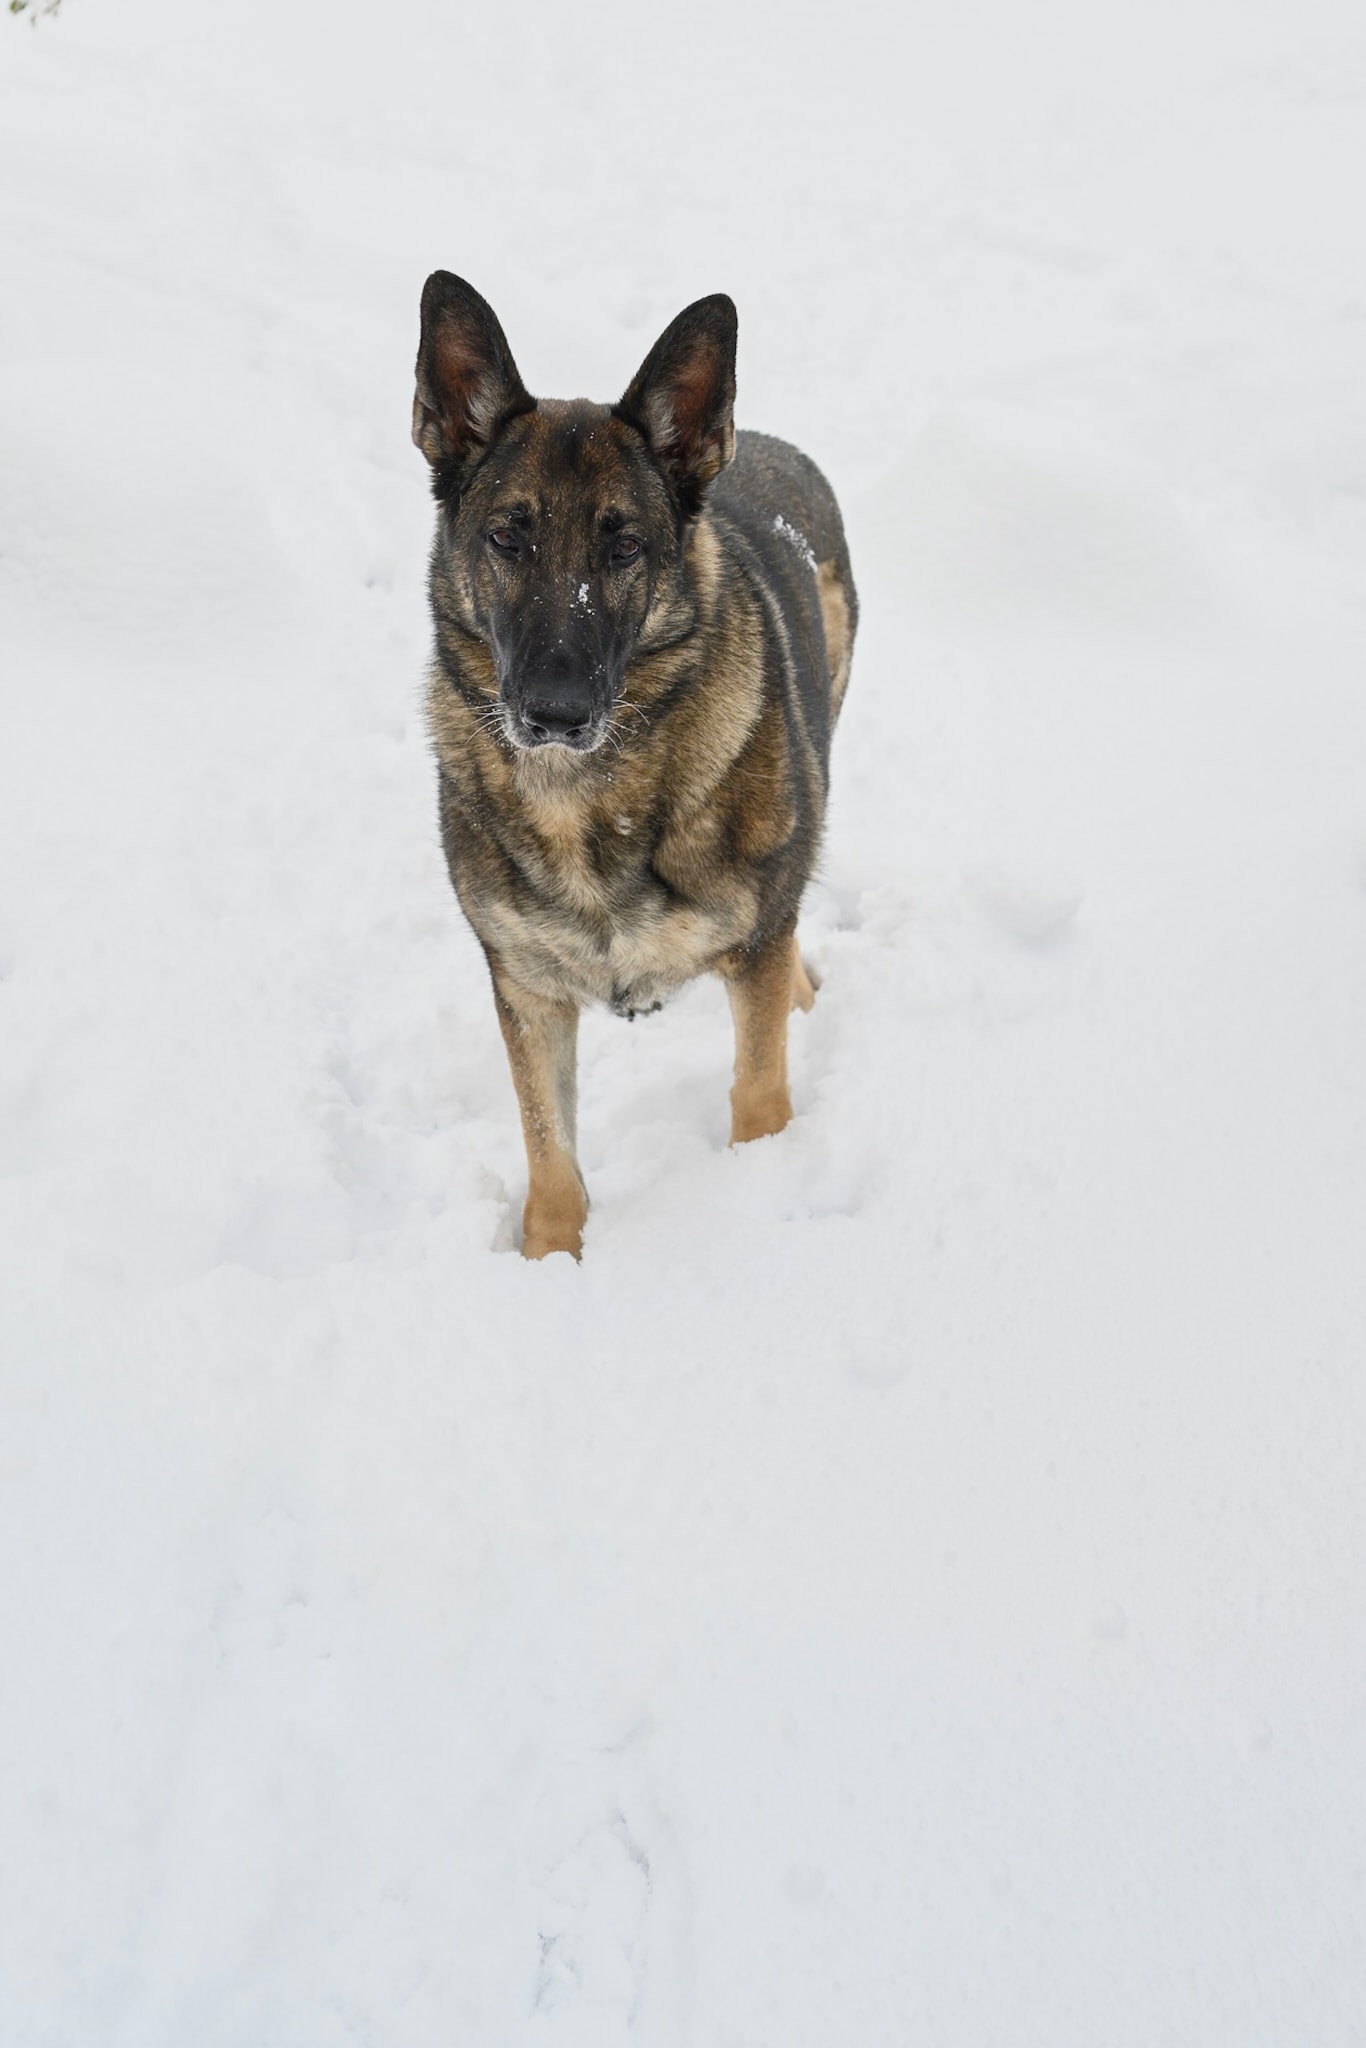 My German shepherd in the snow